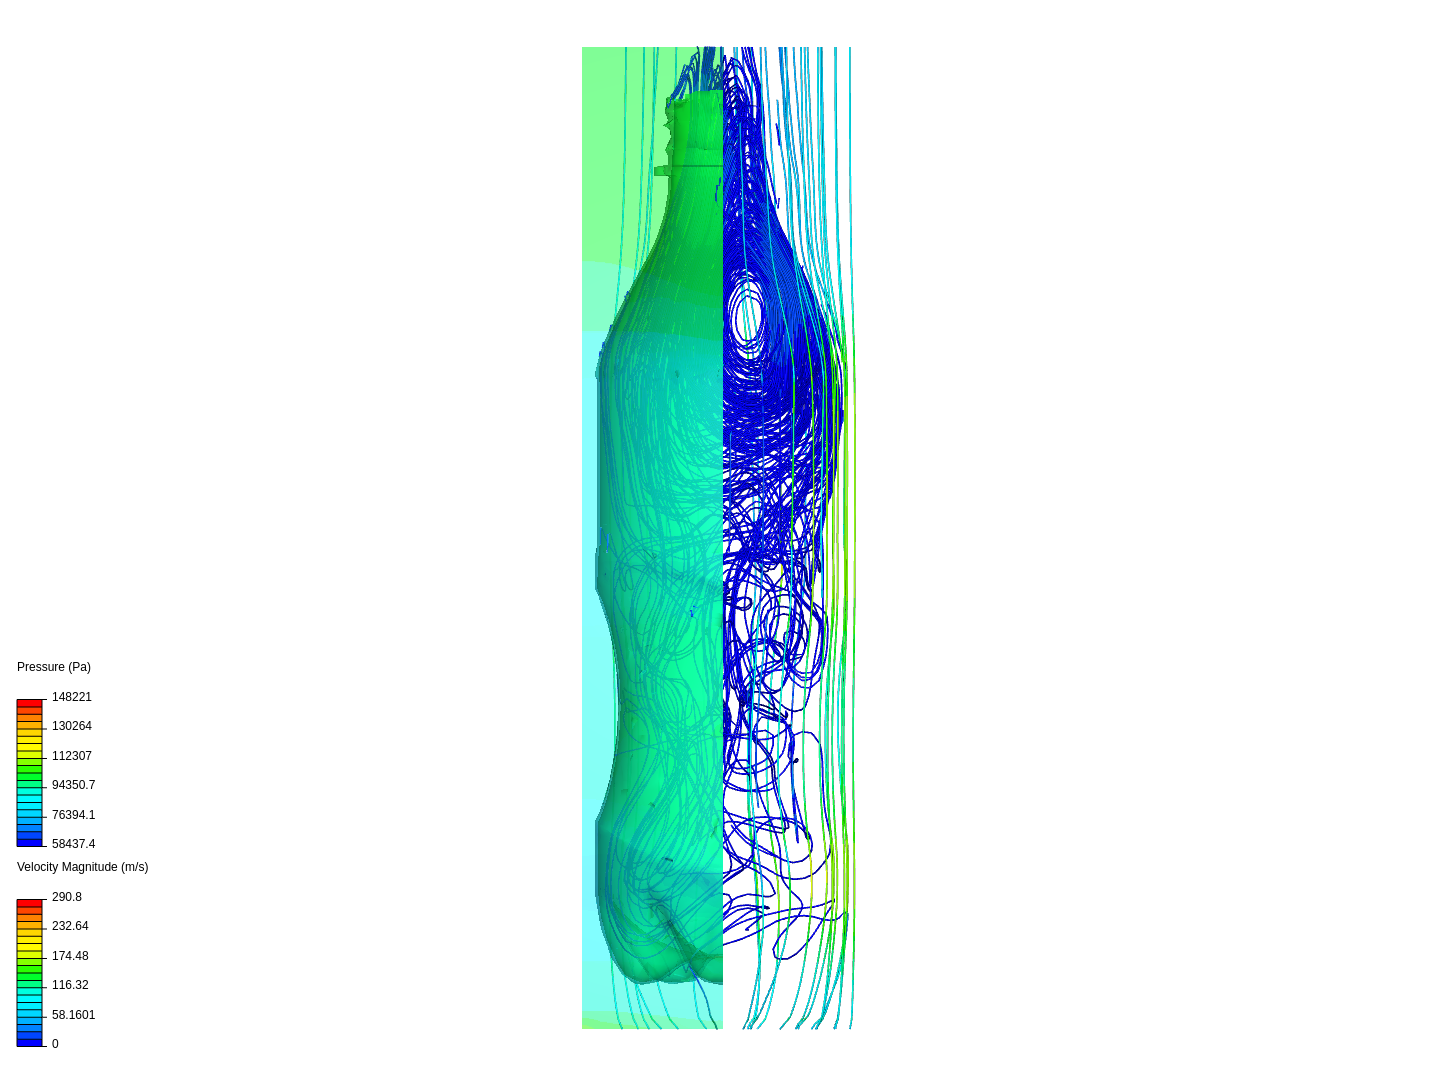 Bottle Rocket image